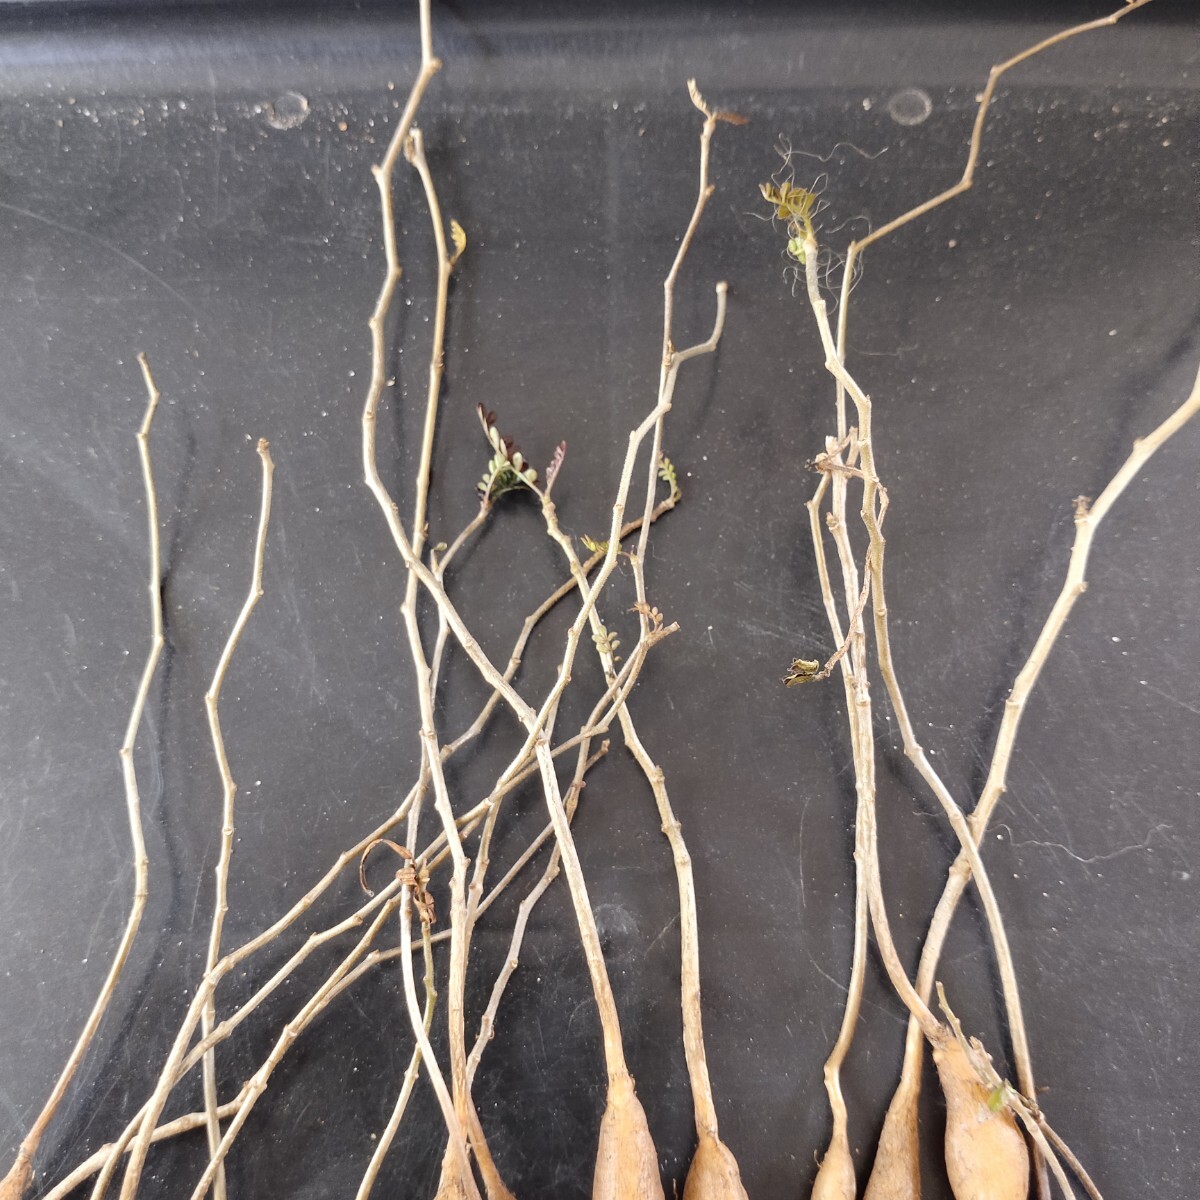 【農夫植物】F280塊根植物 オペルクリカリア パキプス Operculicarya pachypus 実生株 17株同梱の画像4